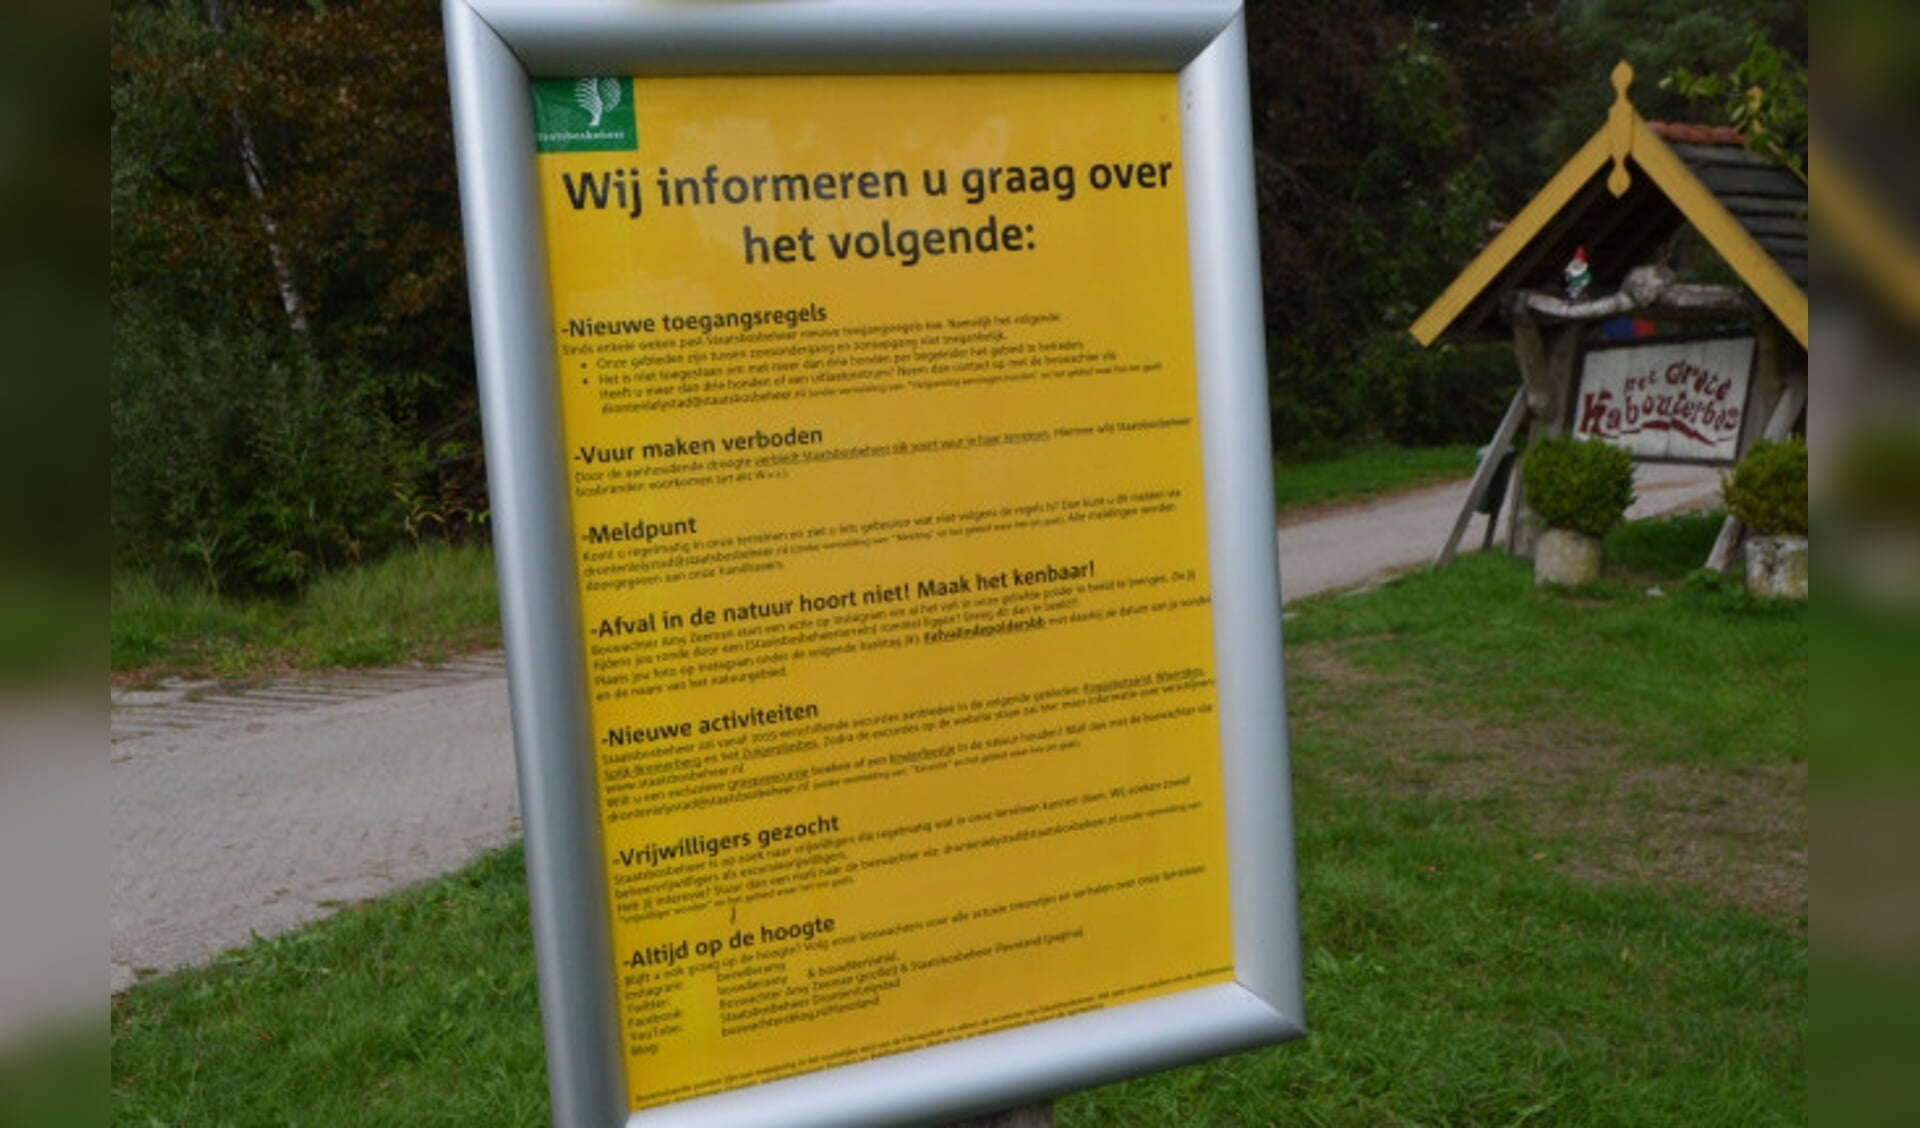  Nieuwe waarschuwingen voor de bezoekers van de bossen.